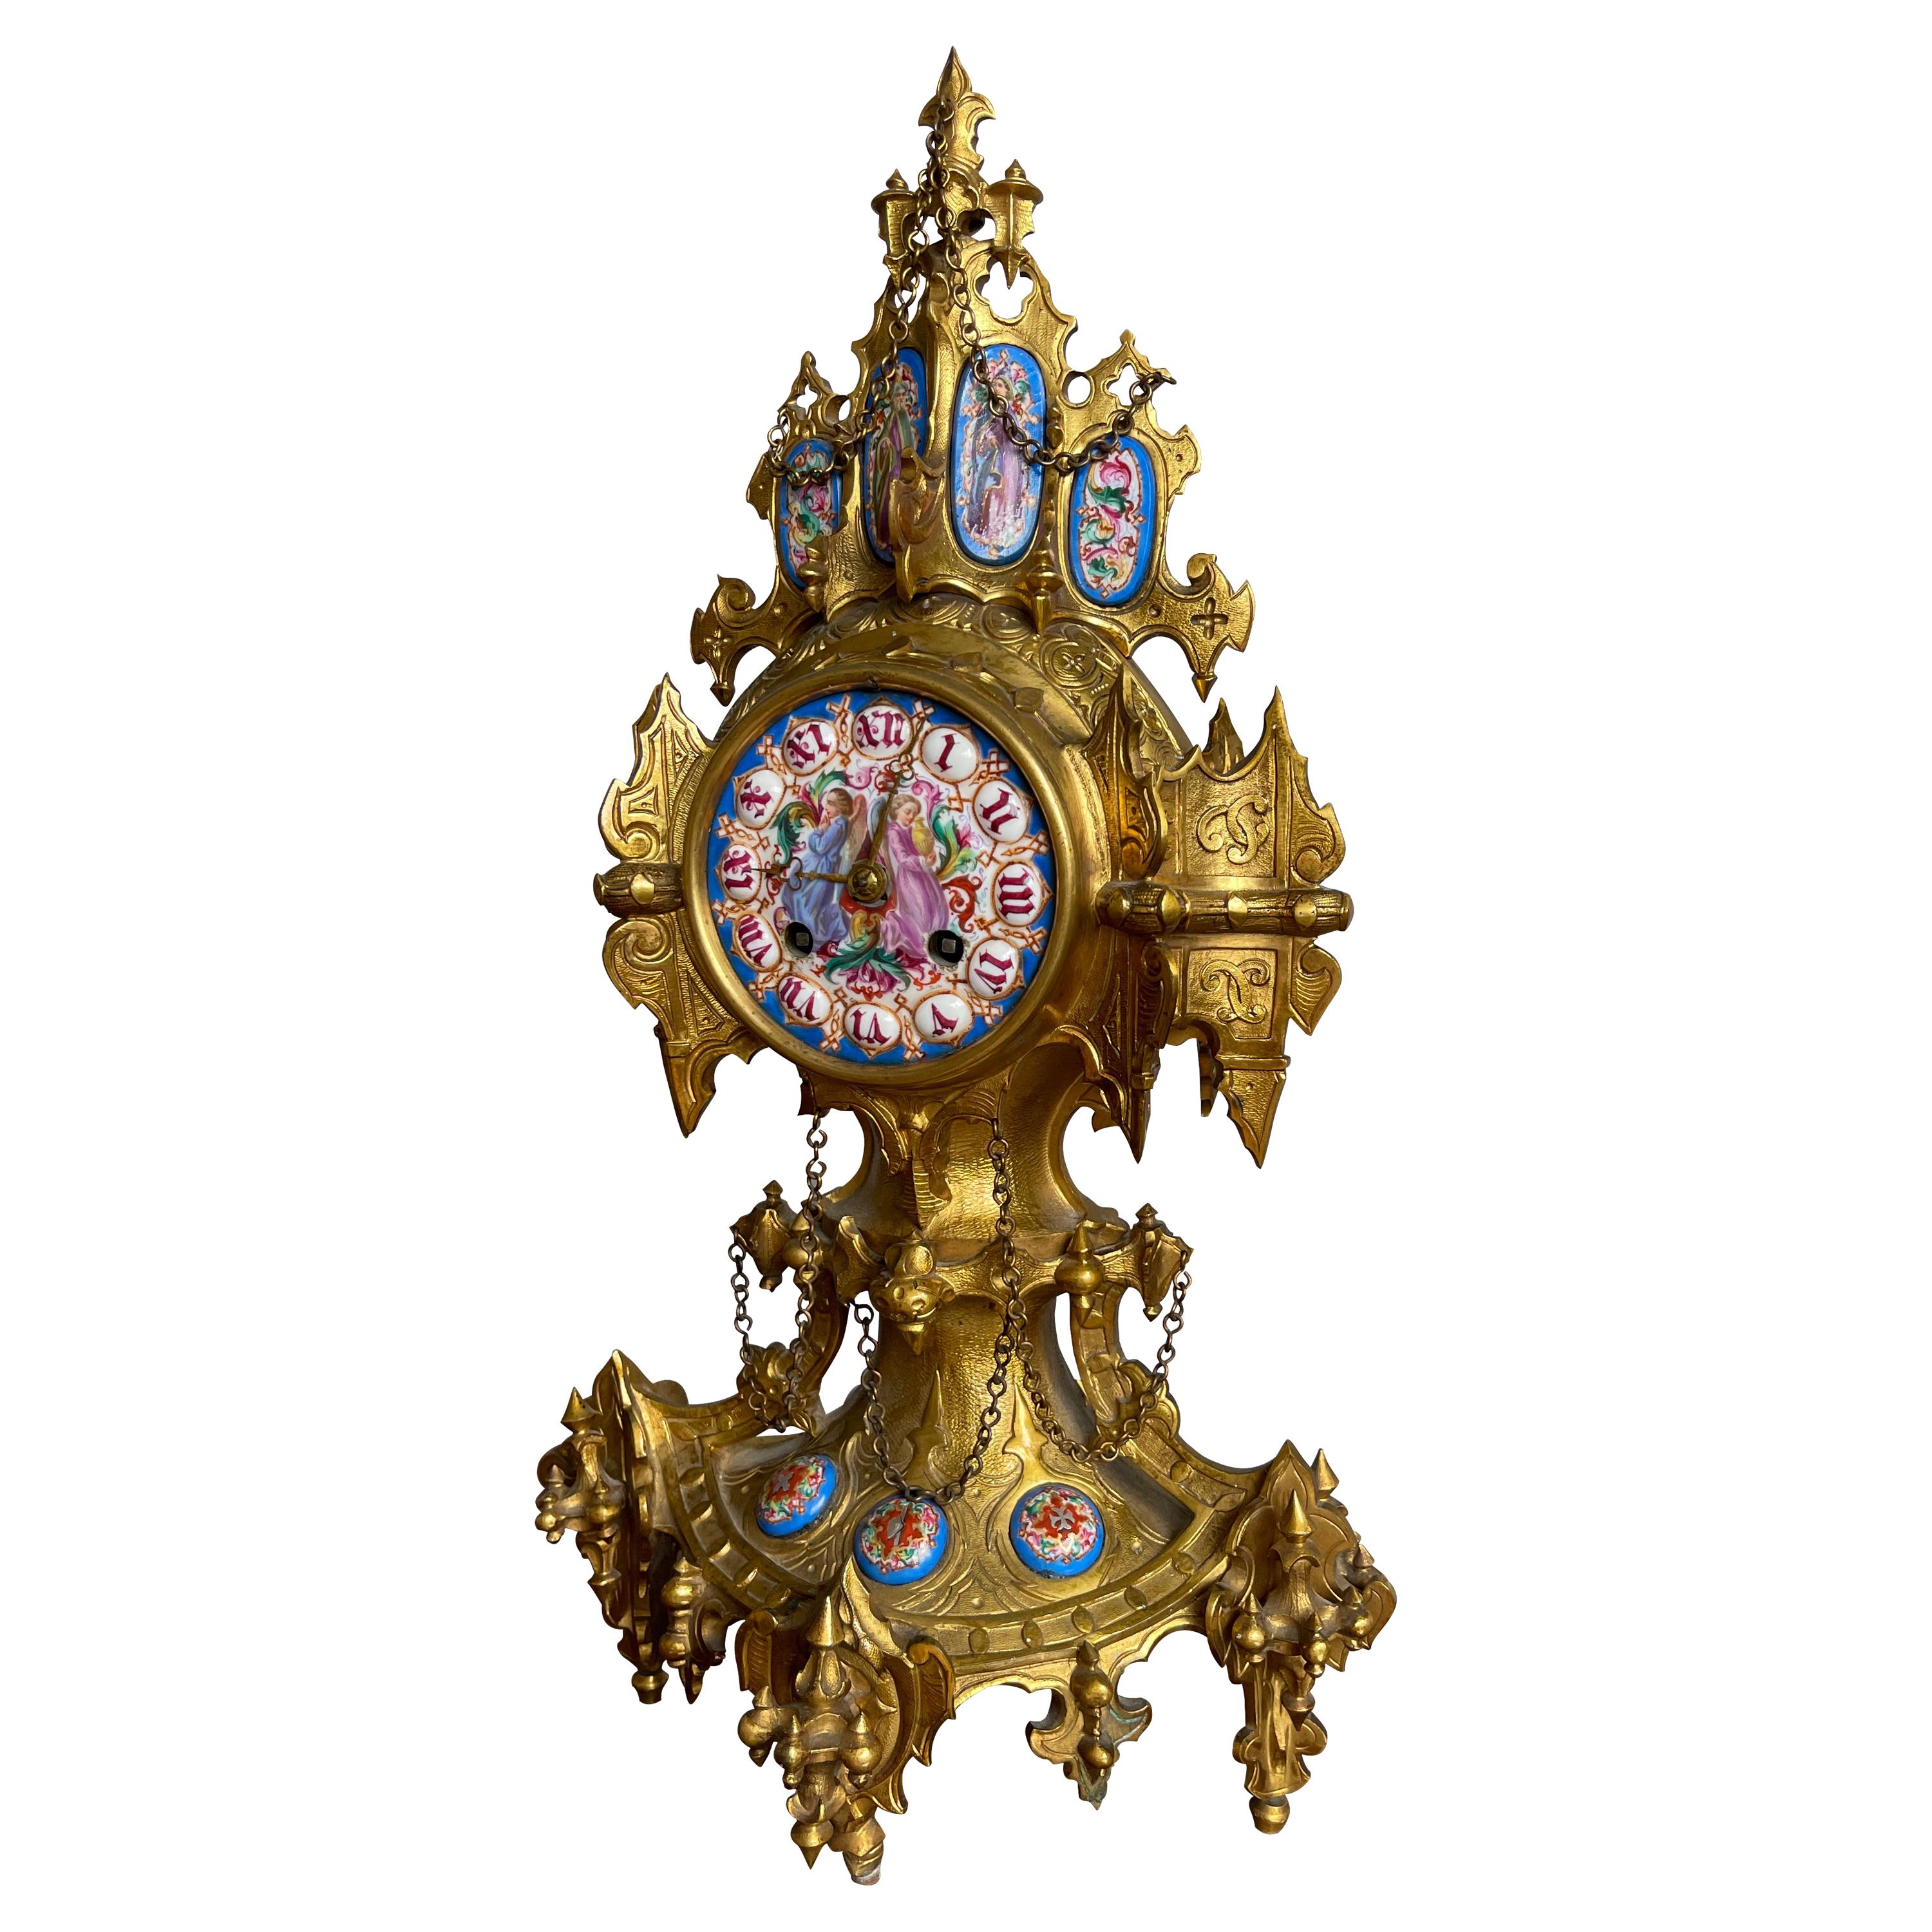 Unique Gothic Revival Gilt Bronze Mantle or Desk Clock w Rare Porcelain Plaques